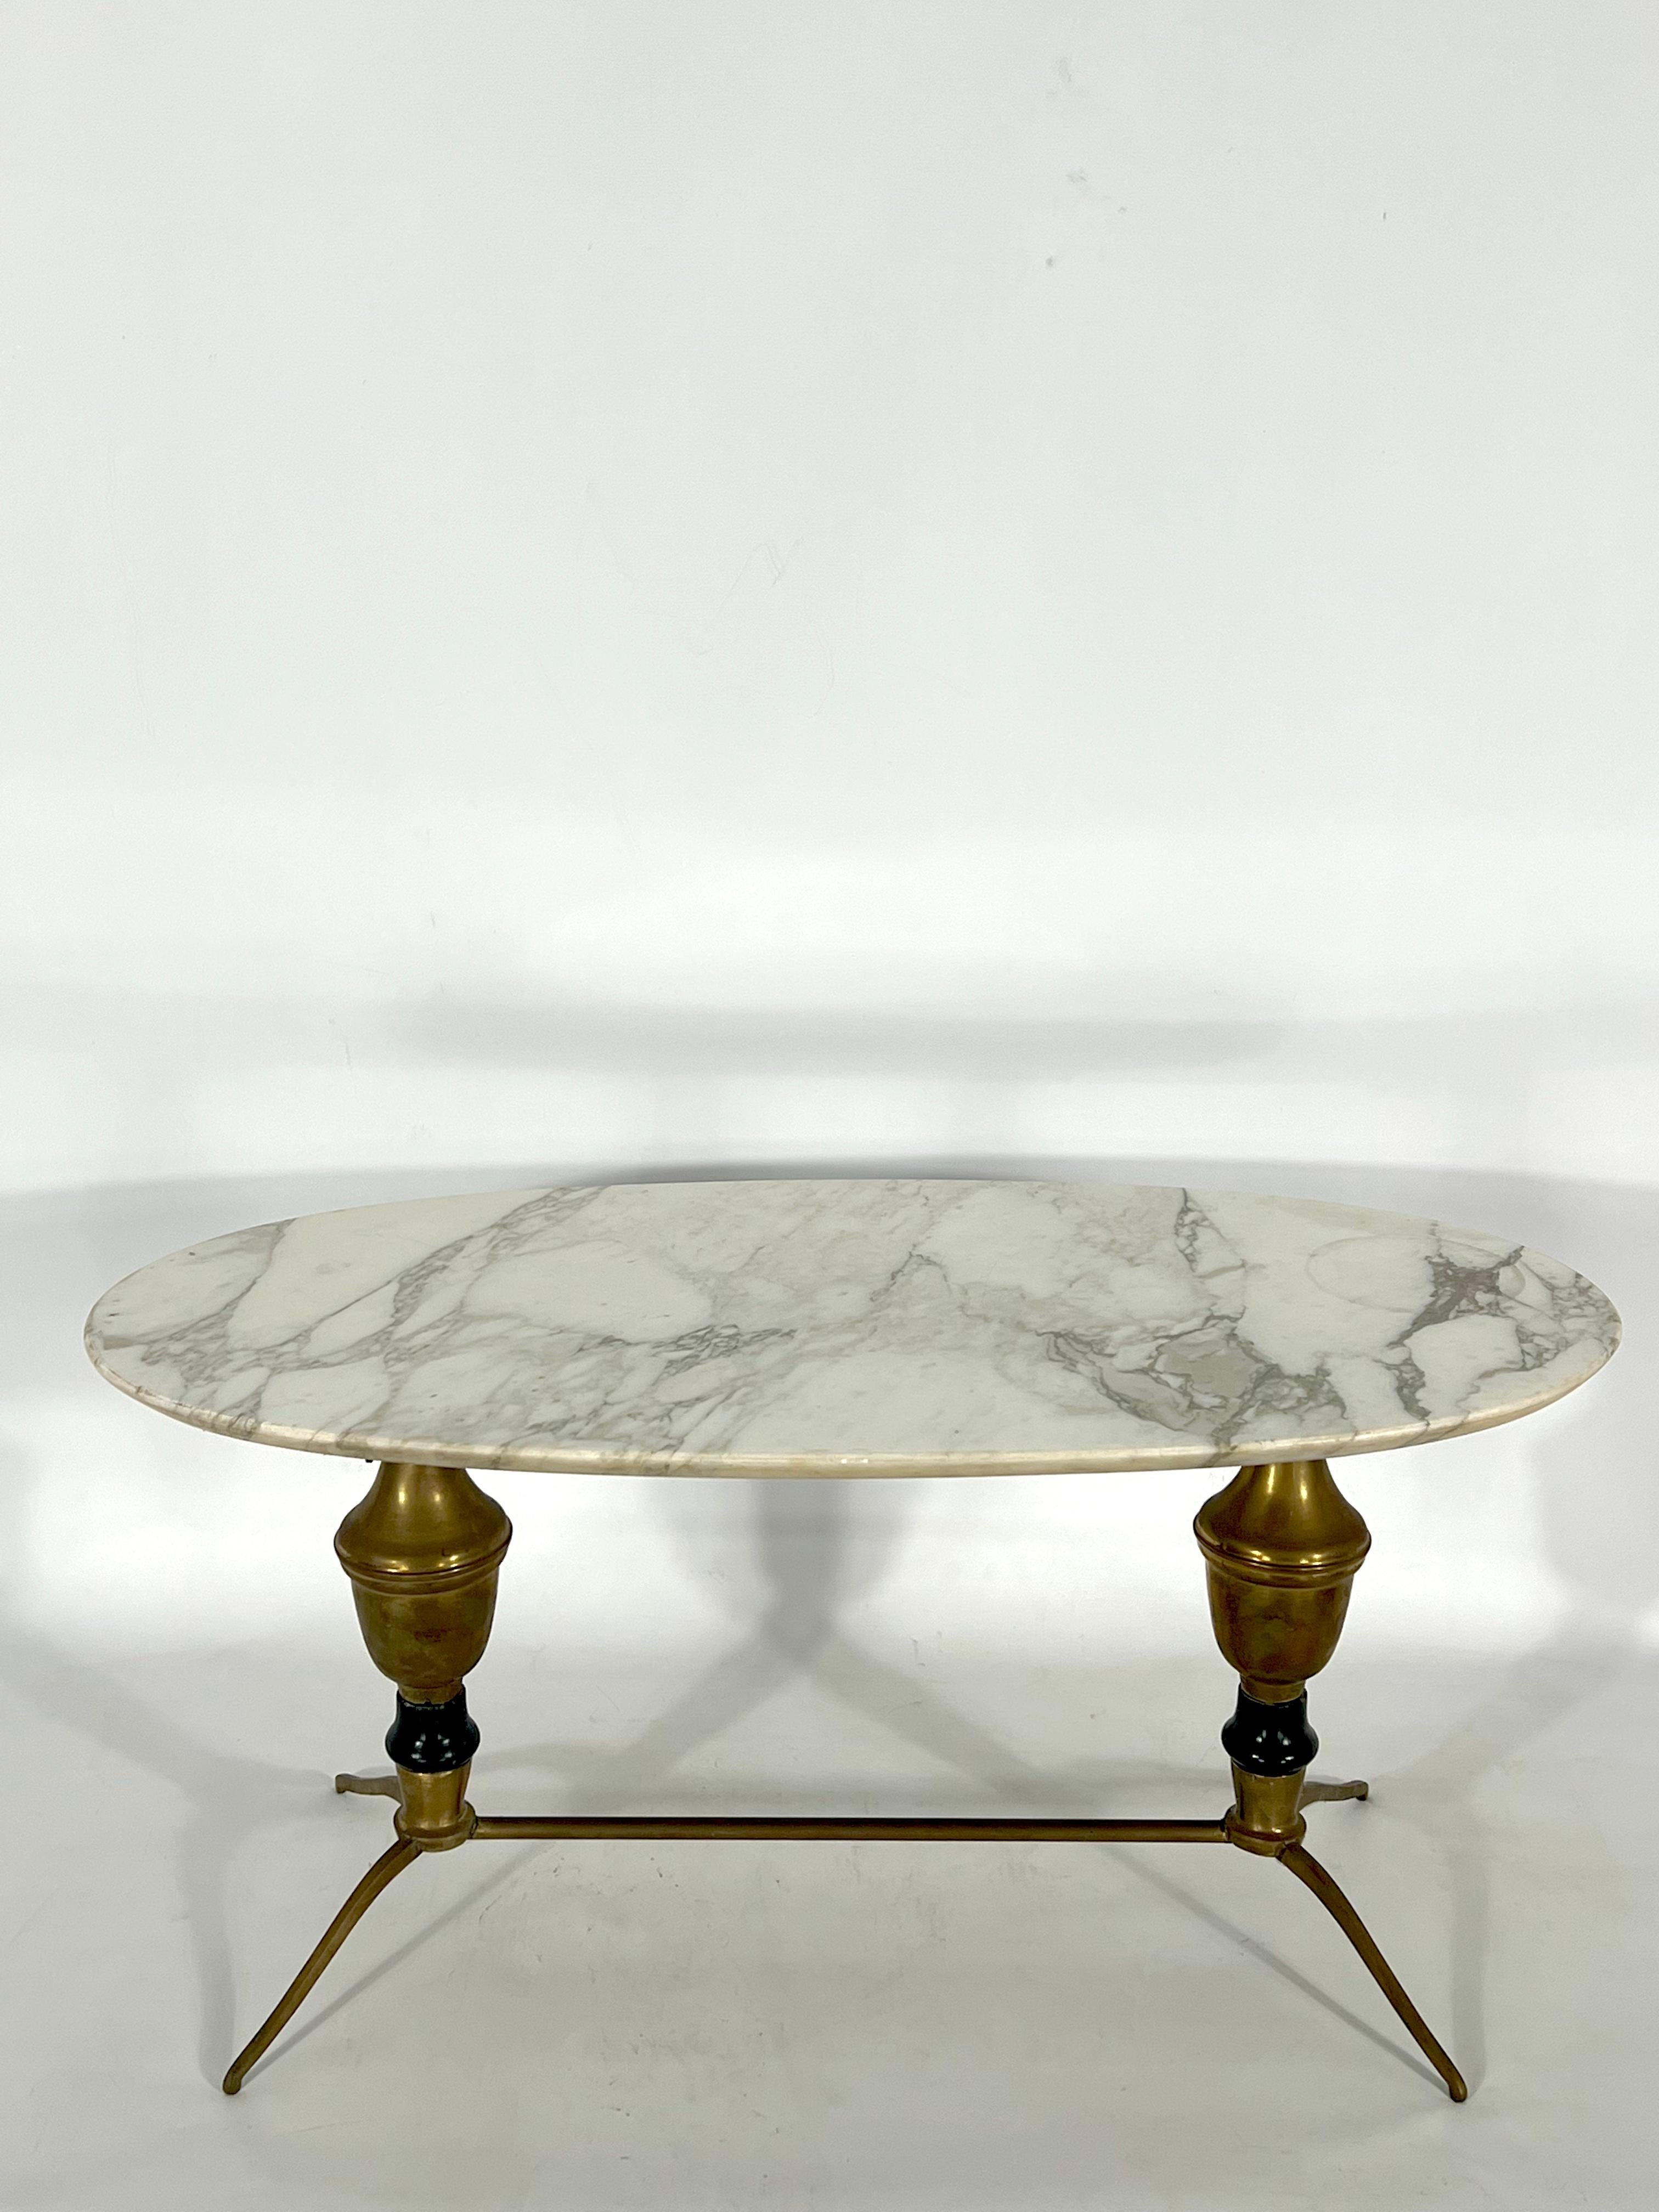 Bon état vintage pour cette table basse ou d'appoint en laiton et marbre produite en Italie dans les années 1950. Trace normale d'âge et d'usage mais une fissure sur la partie supérieure de la structure en laiton comme le montre la photo.